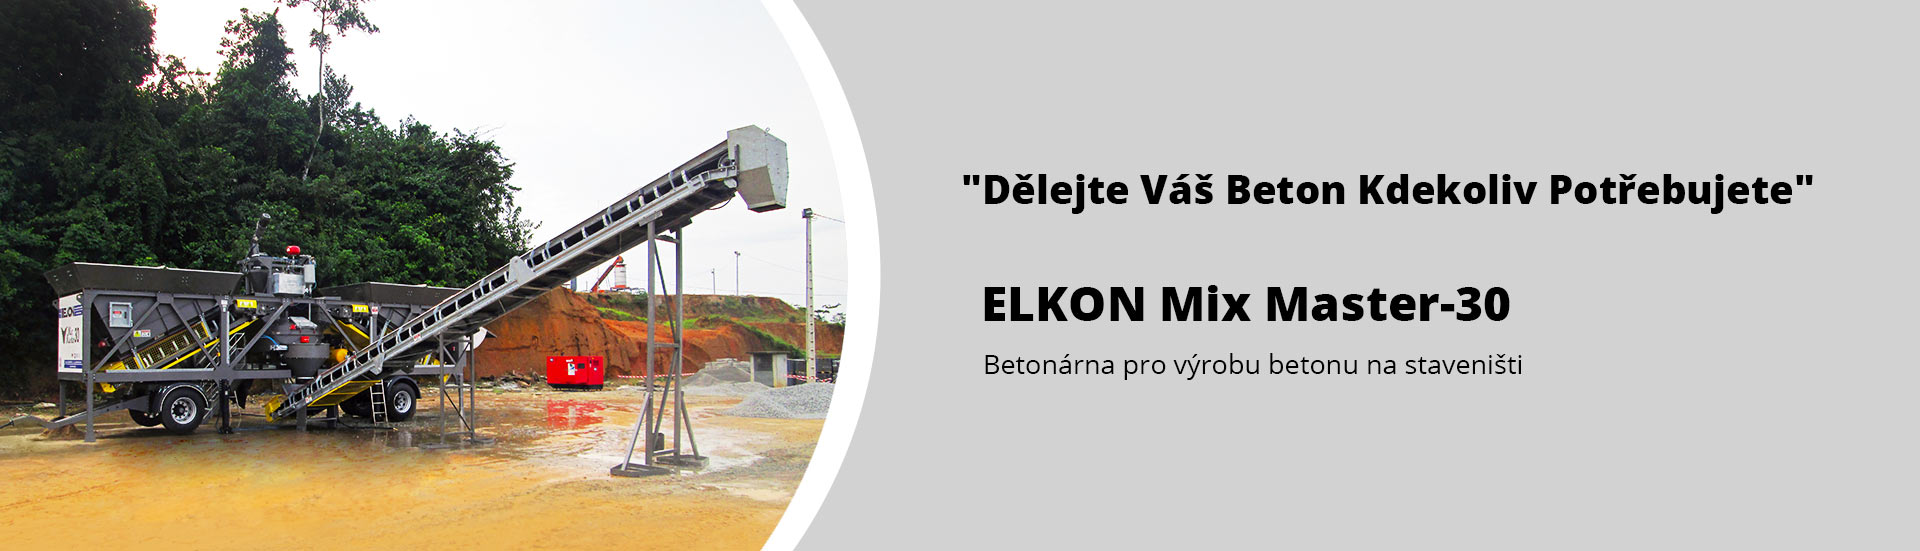 9-Elkon-Mix-Master-30_8